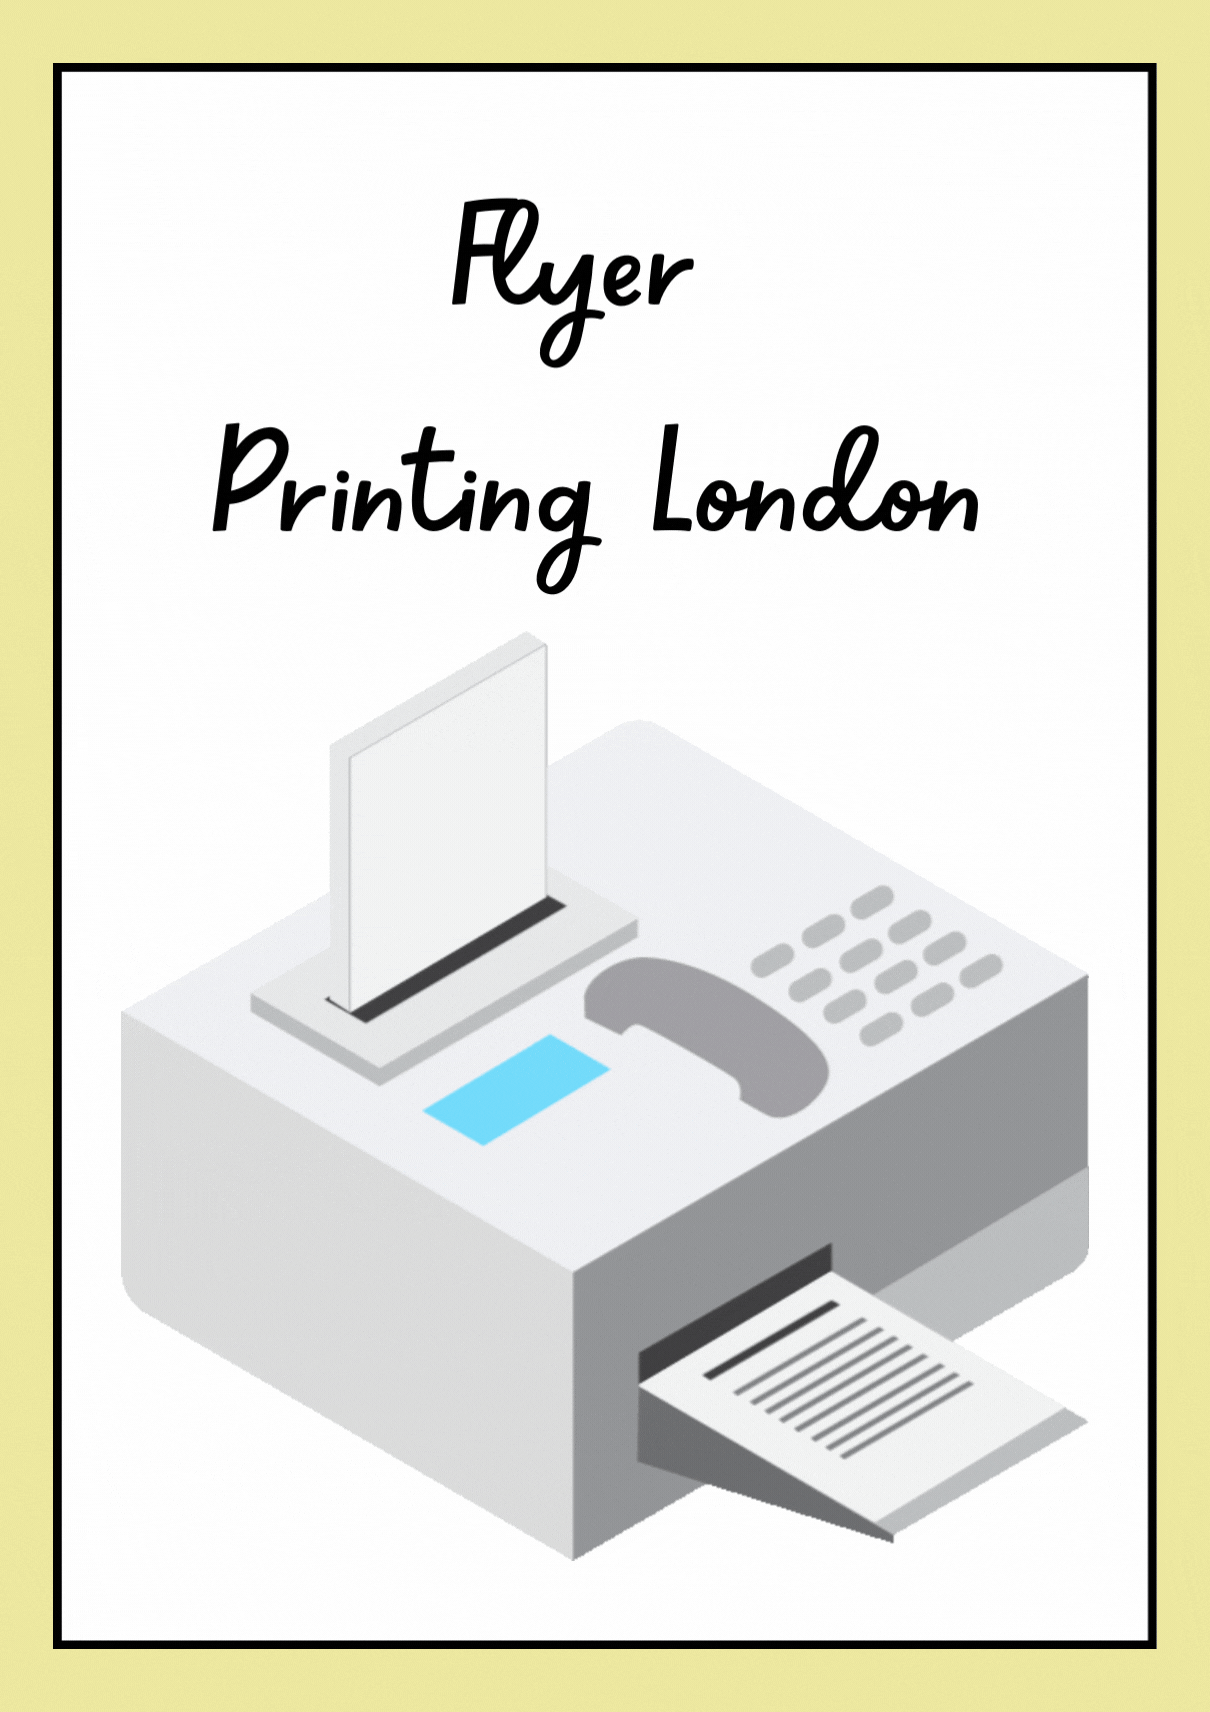 Flyer Printing || Same Printing London